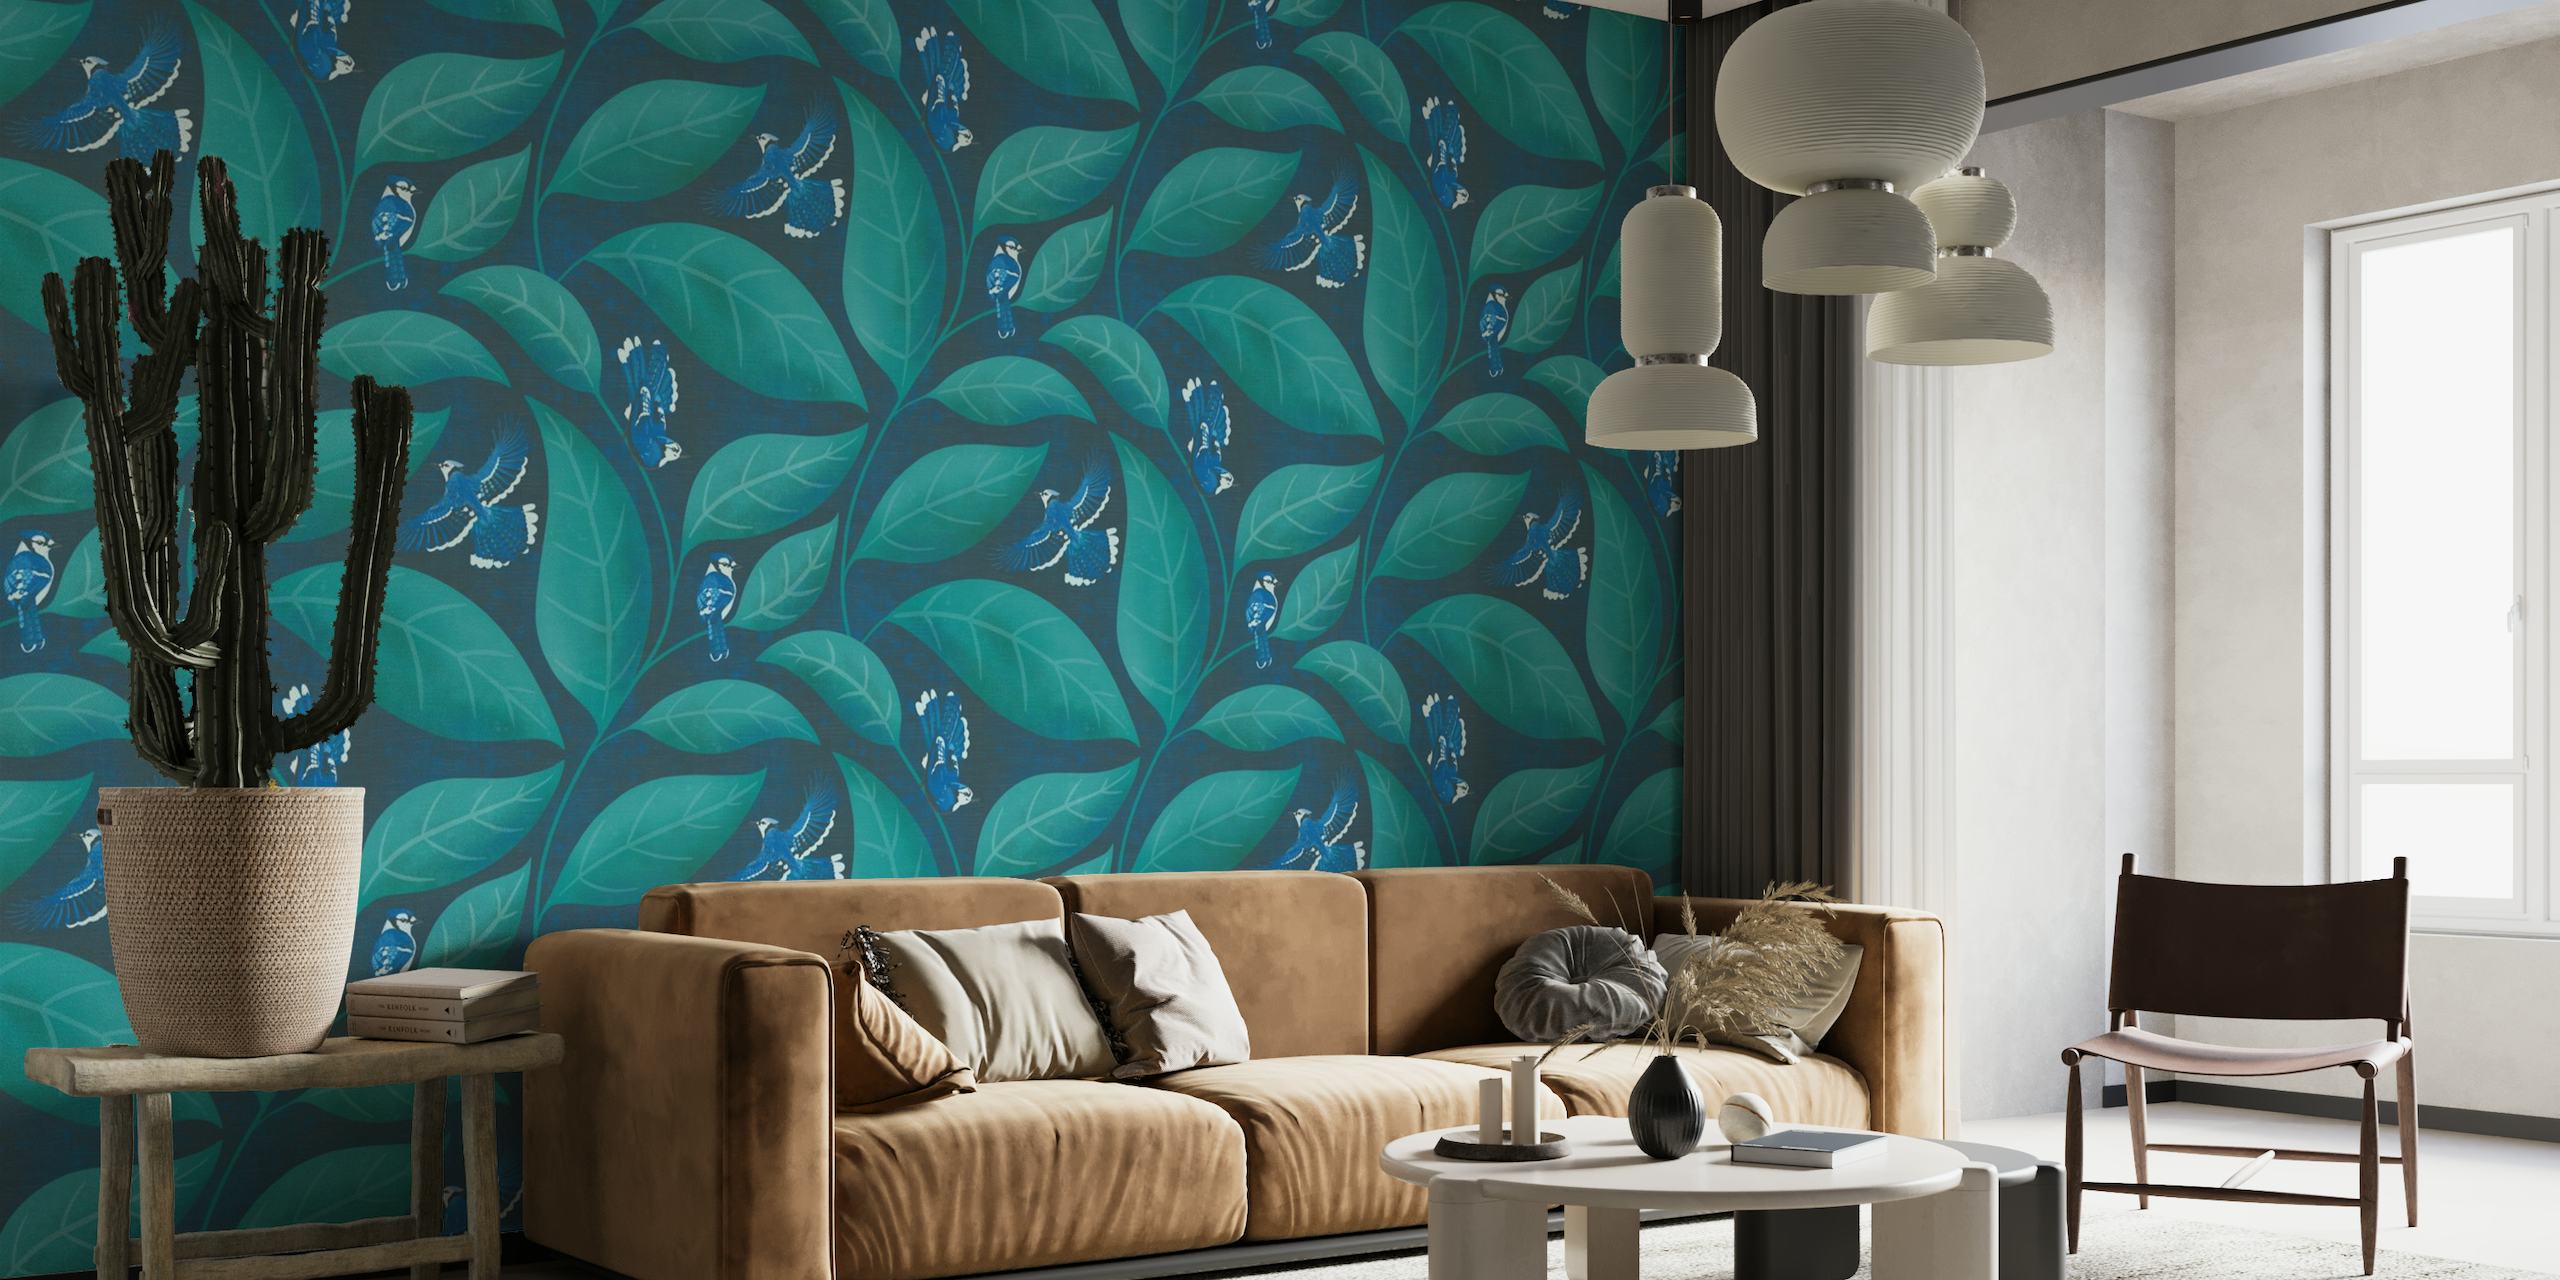 Motifs d'oiseaux de geai bleu sur fond de feuilles vertes dans la fresque murale aux couleurs Pantone Ultra Steady.